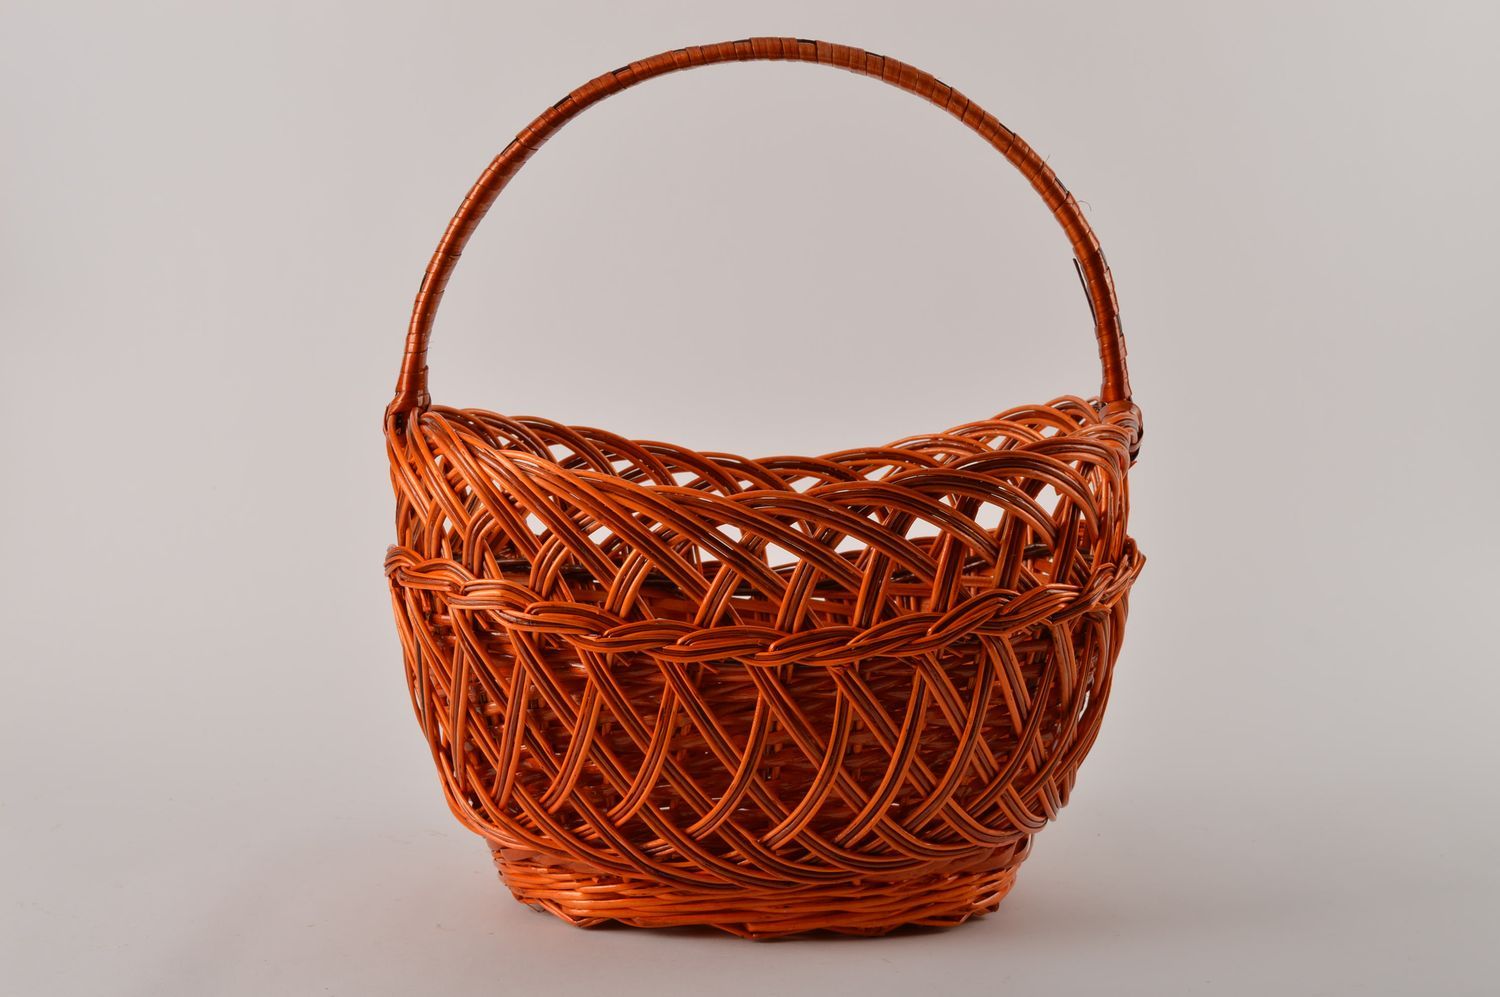 Handmade designer woven baskets 4 baskets for Easter decorative baskets photo 4